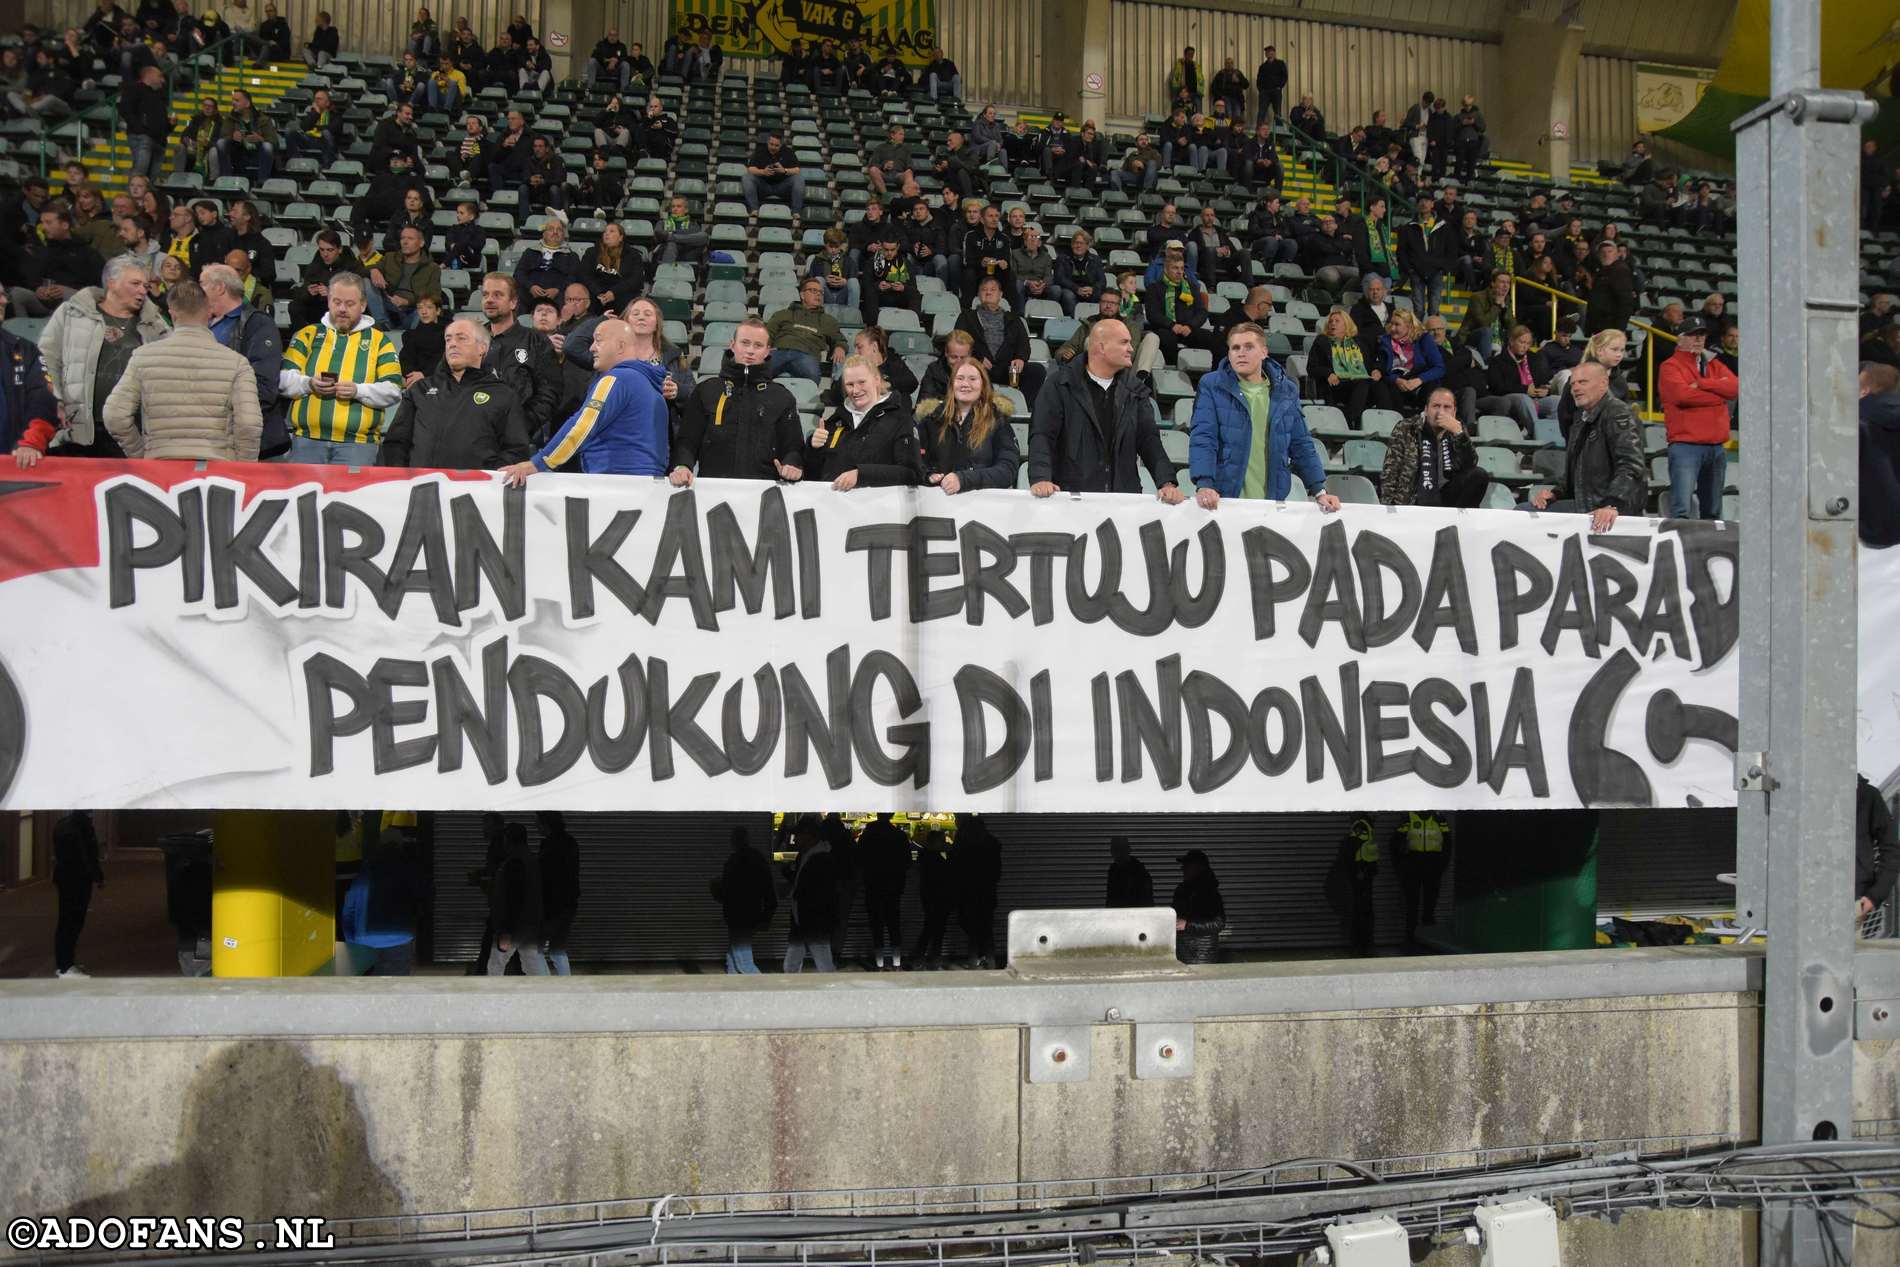 ADO Den Haag Arema FC  Persebaya Surabaya Pikiran kami tertuju kepada para pendukung di indonesia